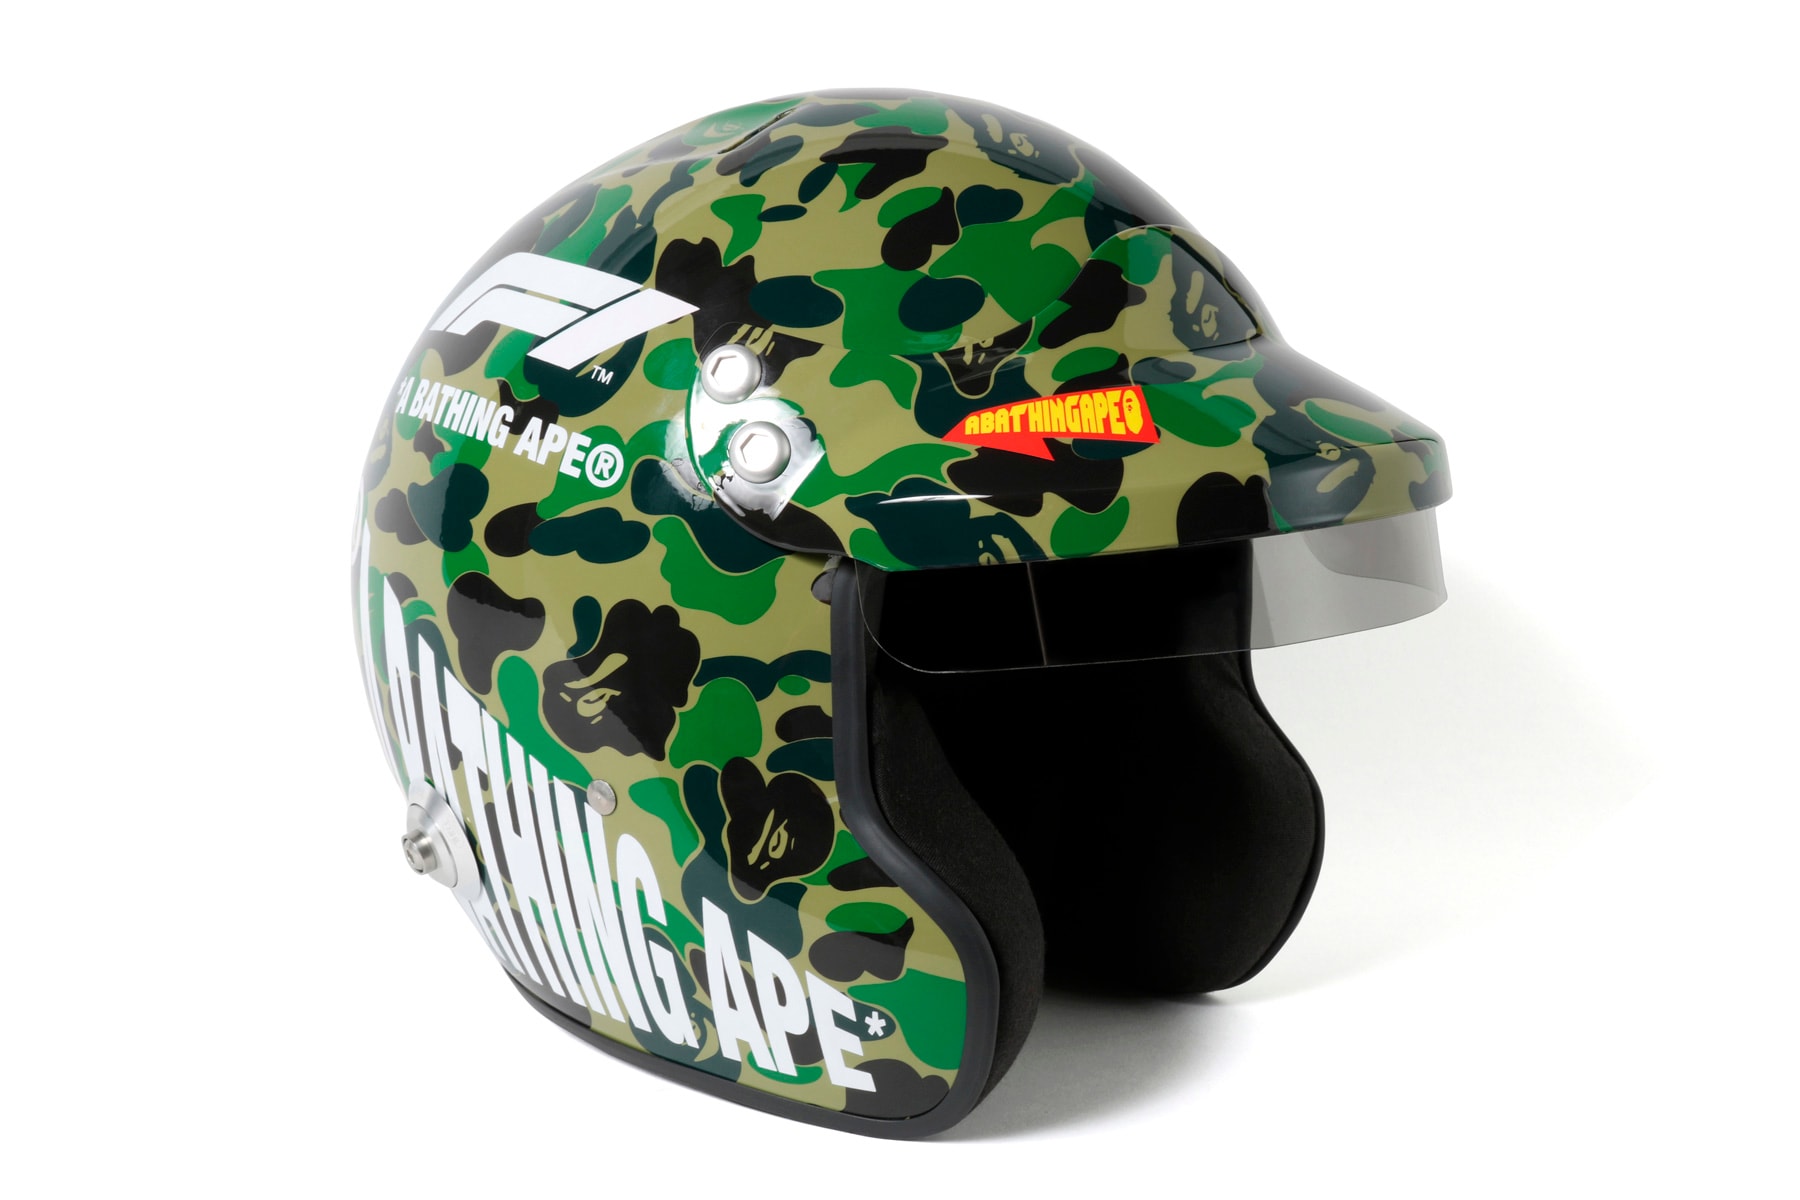 BAPE x F1 Jacket and Helmet Giveaway 1st camo formula 1 racing japan a bathing ape